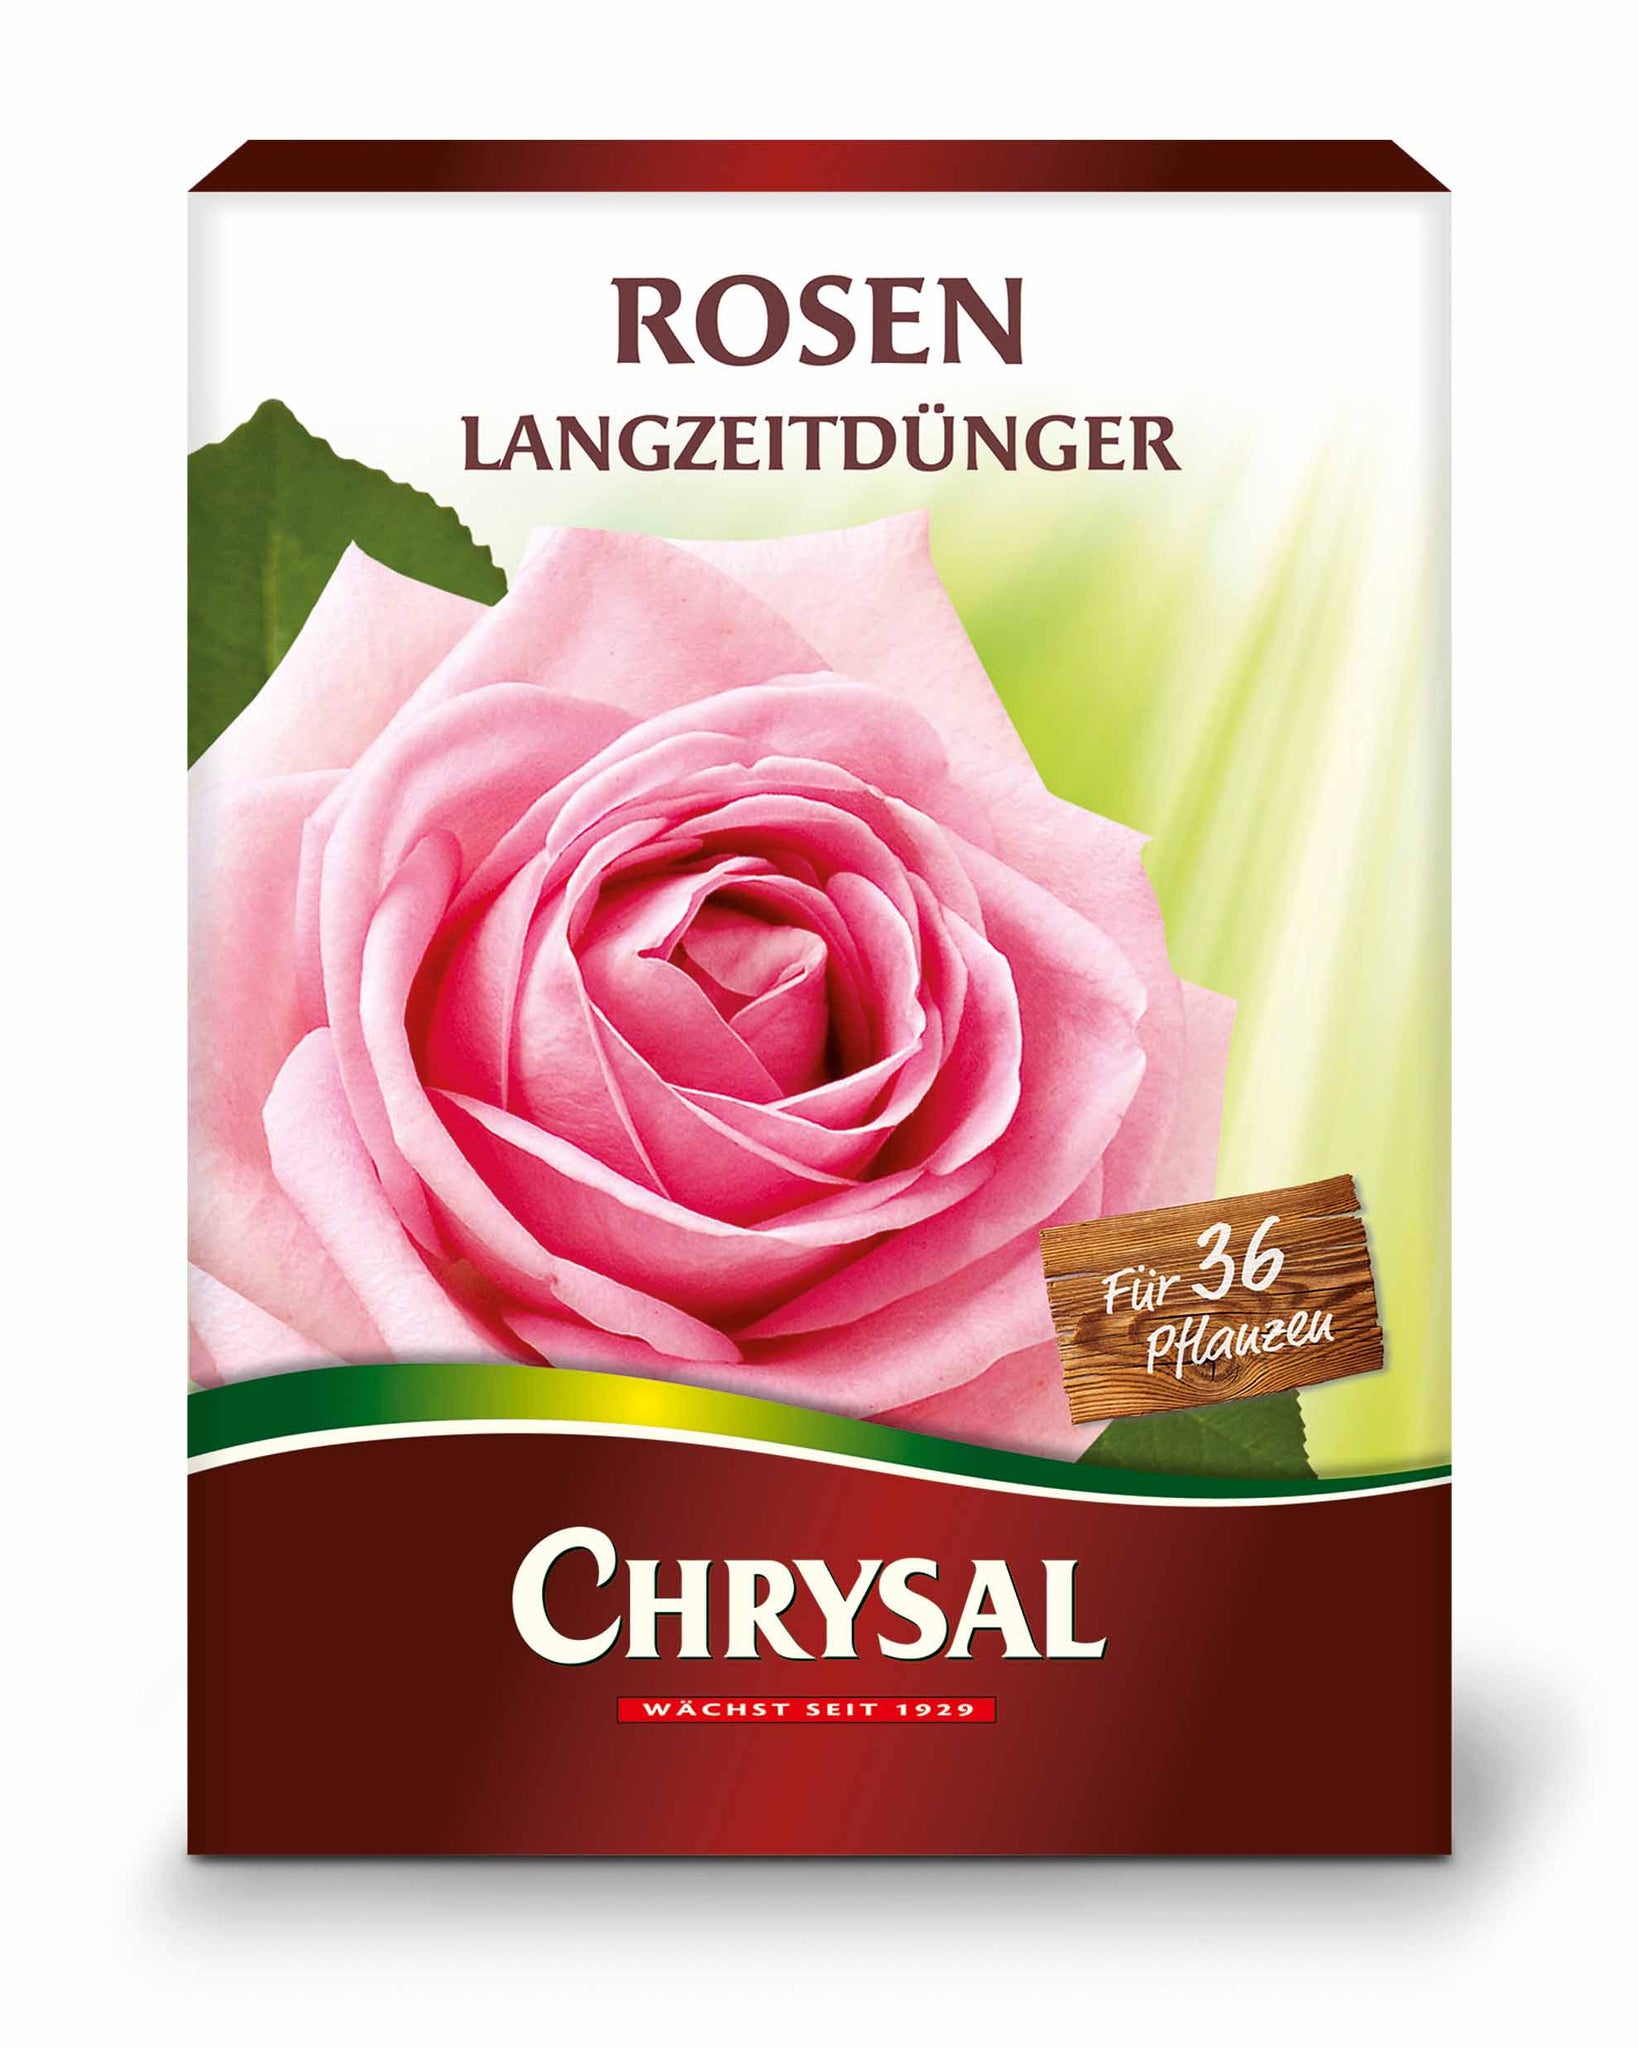 Chrysal Rosen Langzeitdünger 900 g